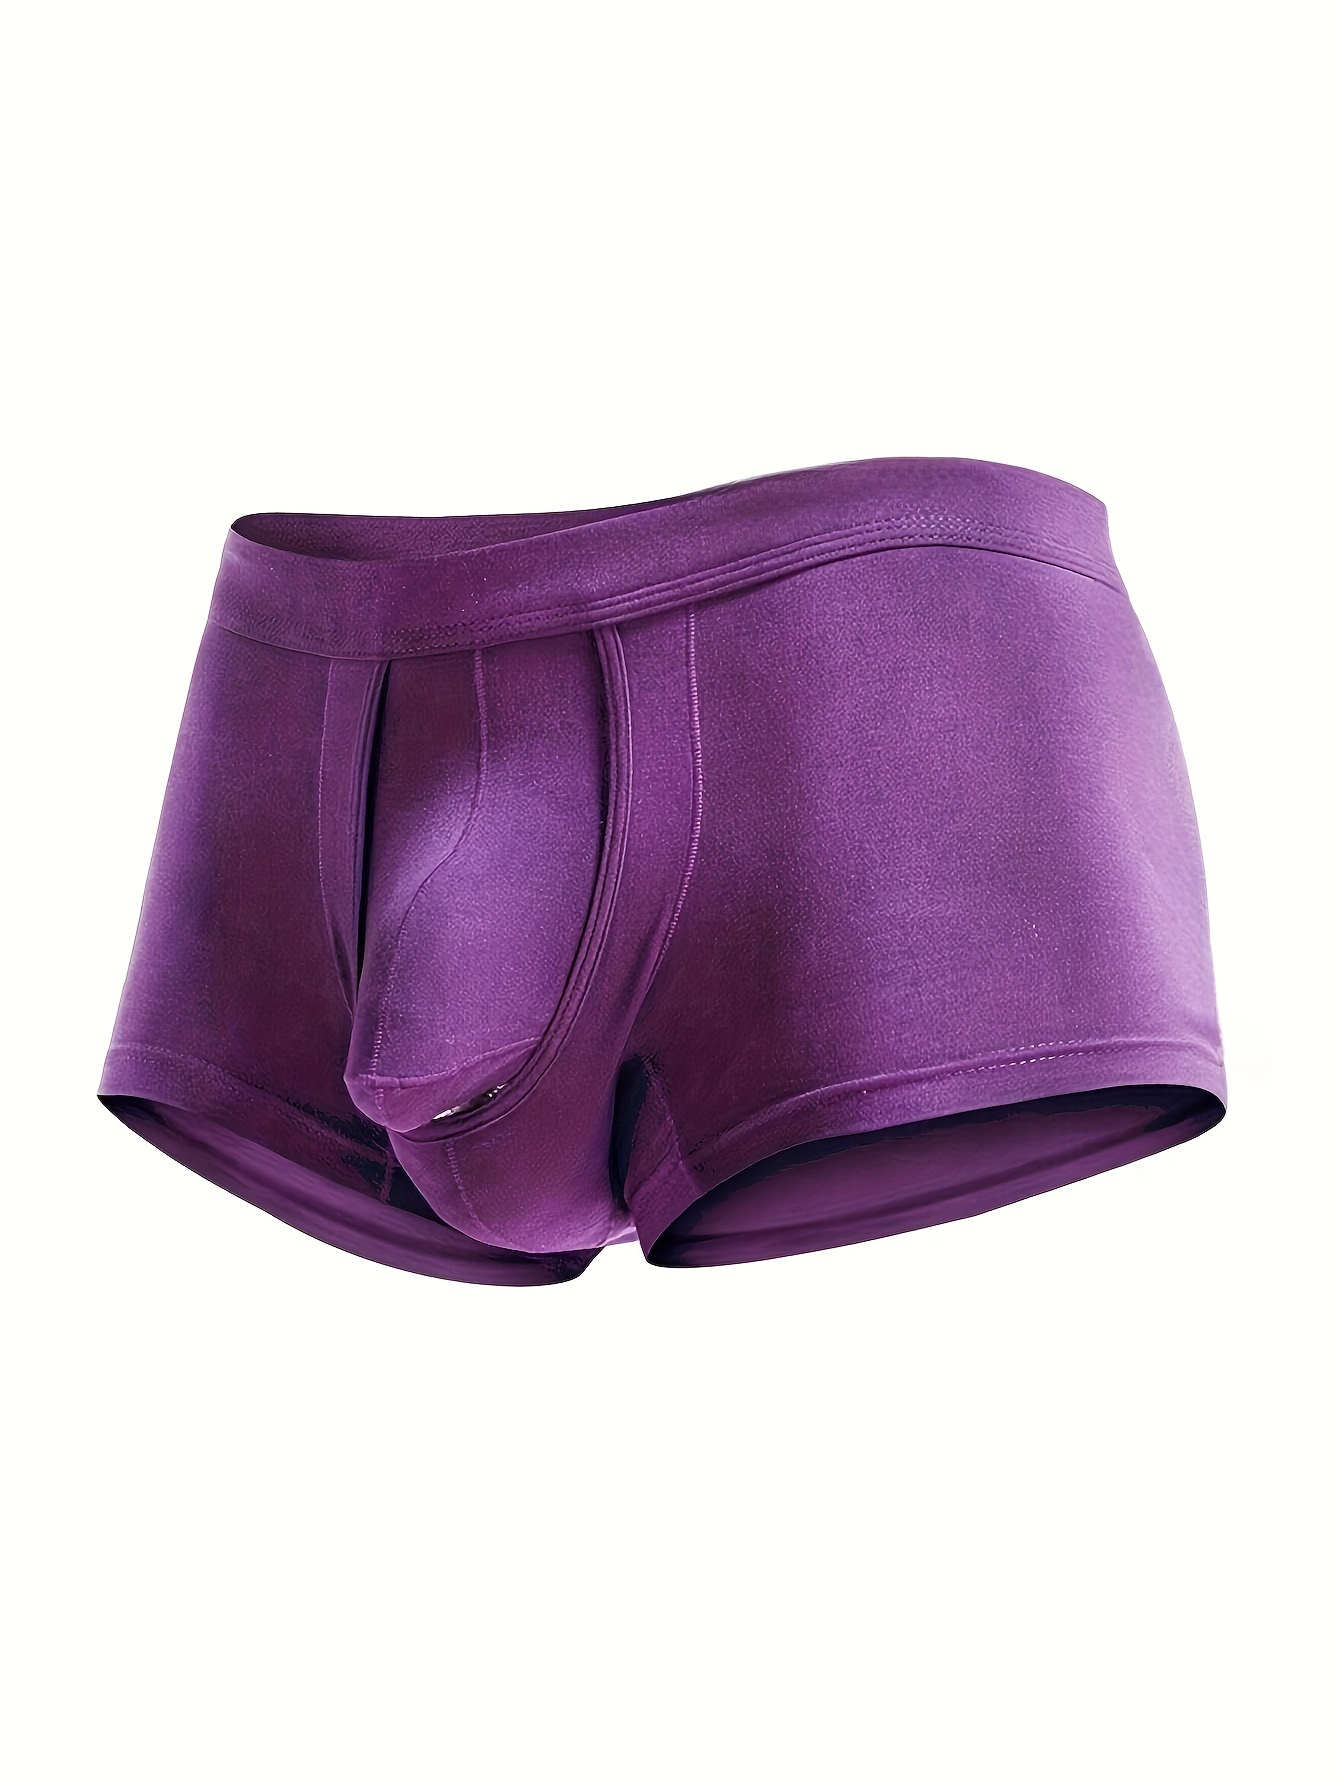 Underwear Expert Well Hung Meundies Boxer Brief Men's Best ENDOWED Underwear  Cushion Comfort Purple Padded removable Sport Indigo Lavender 